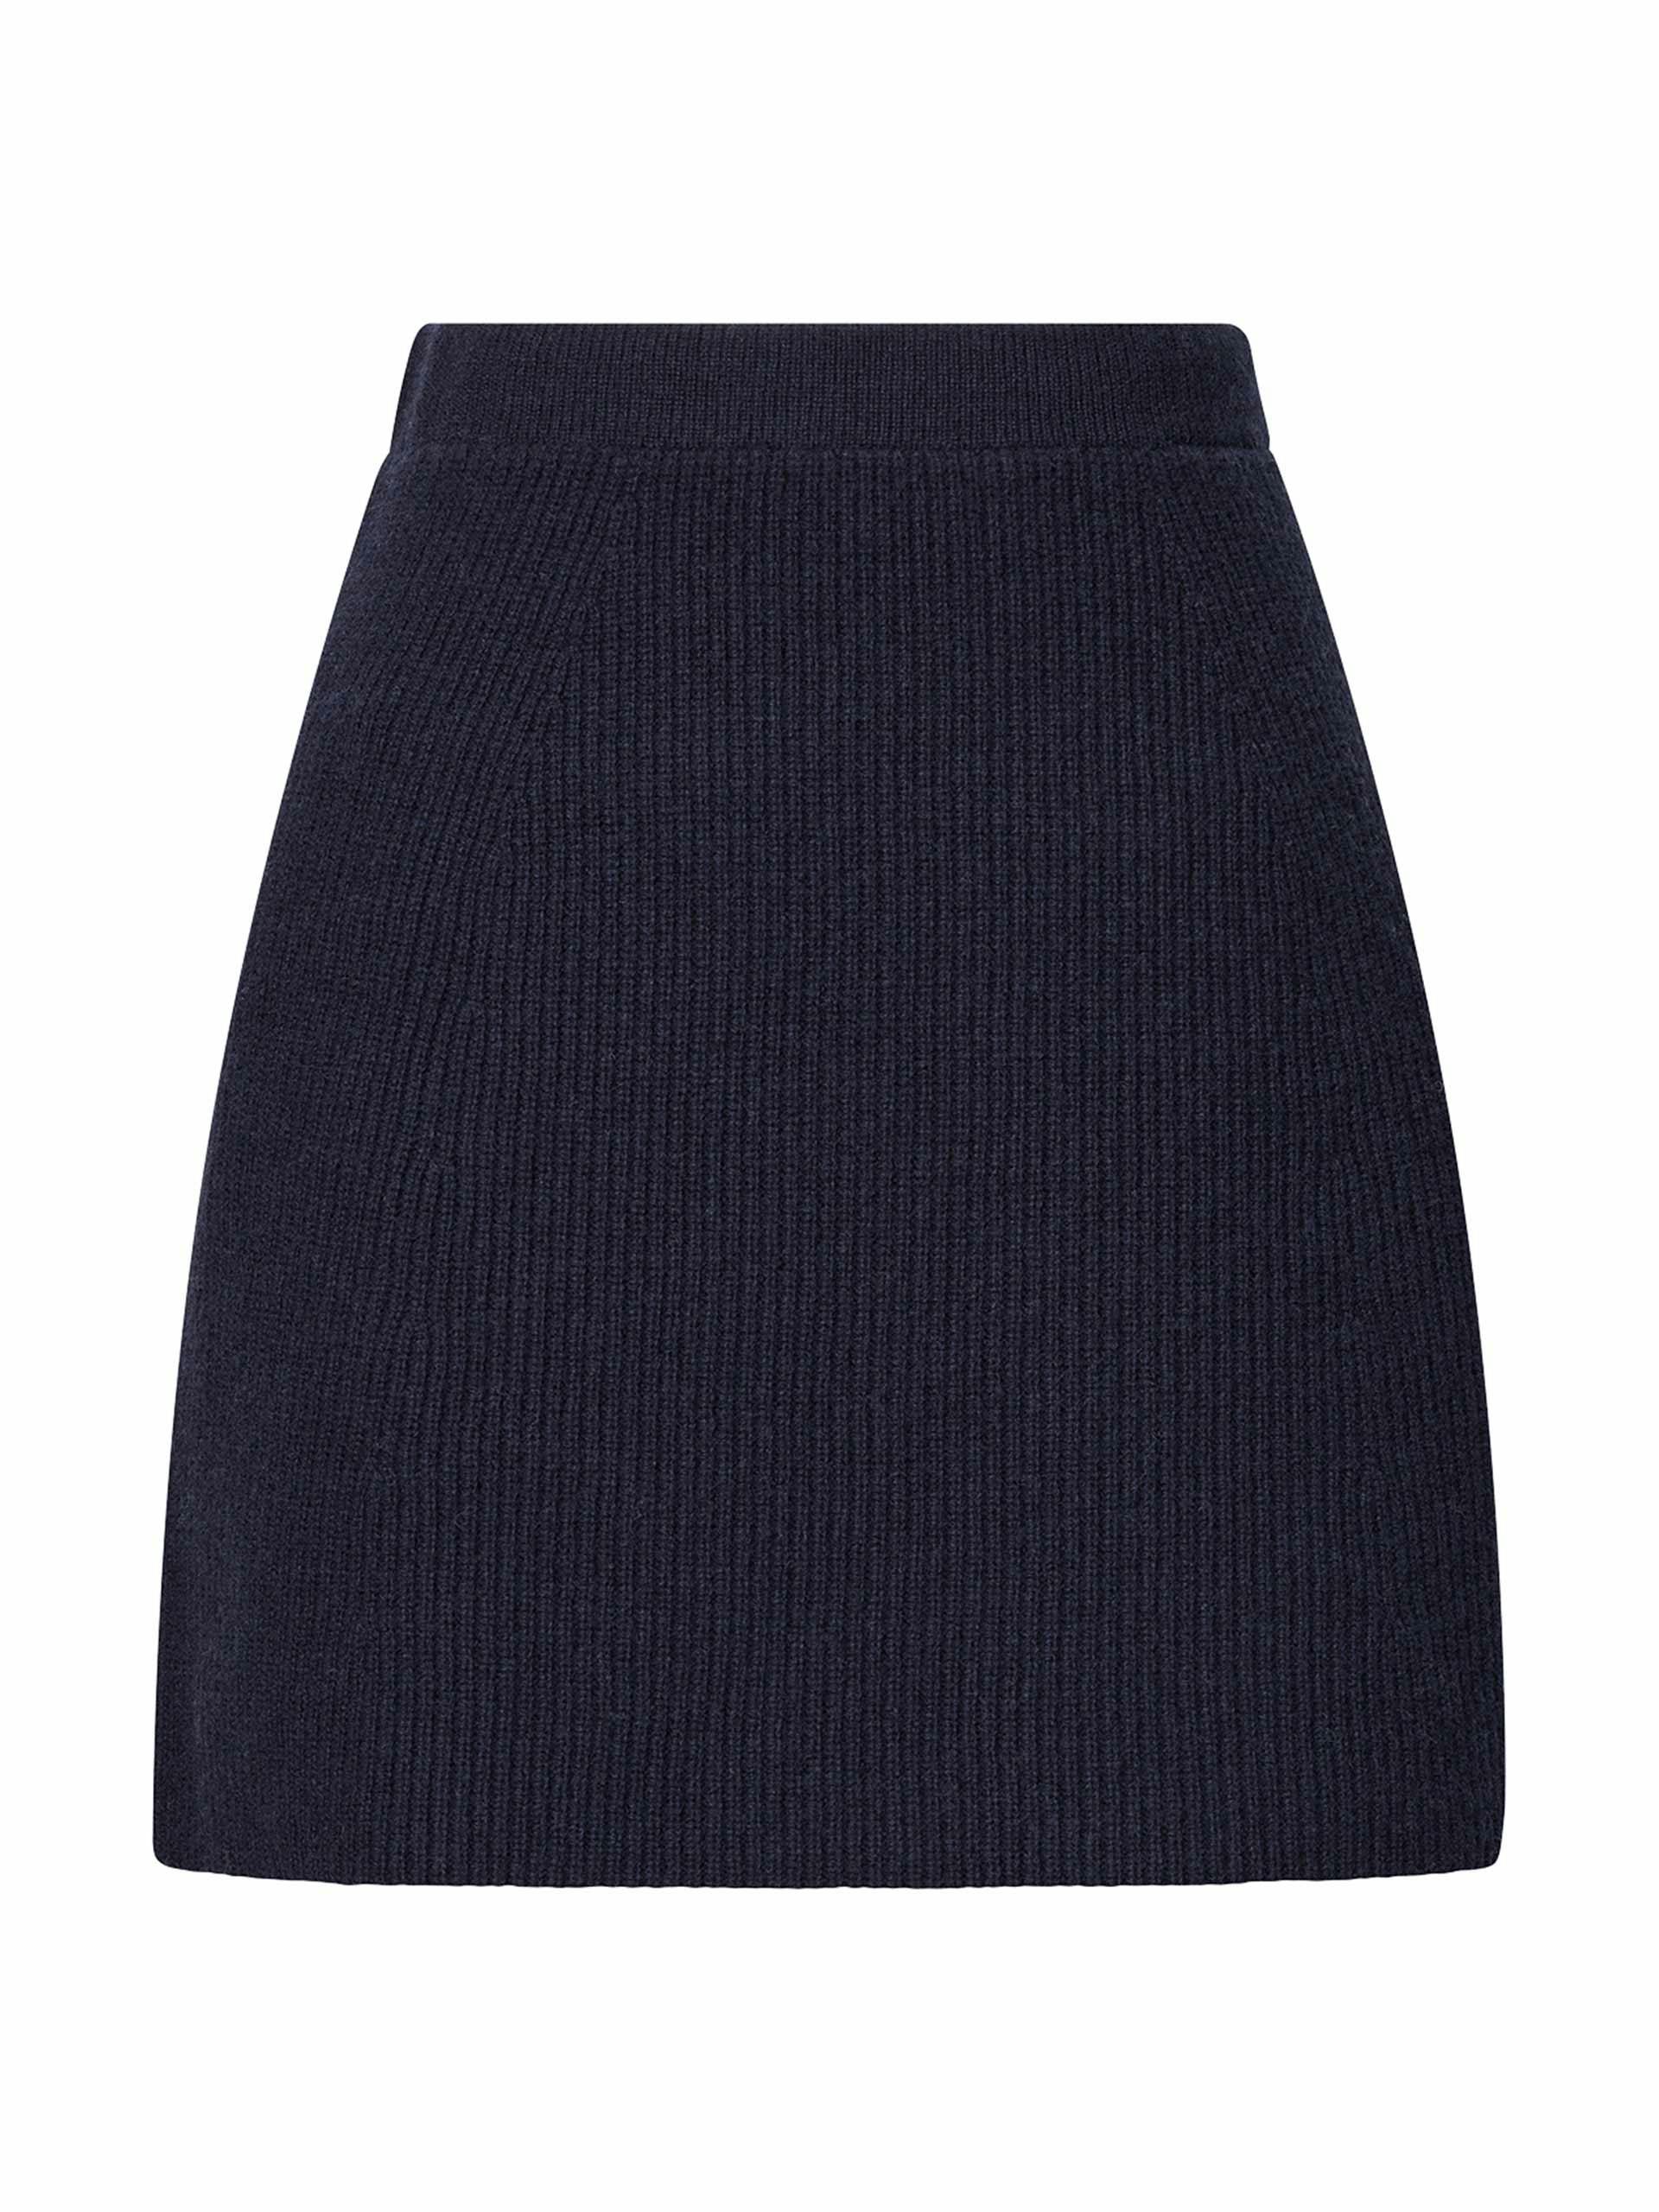 Navy lambswool mini skirt